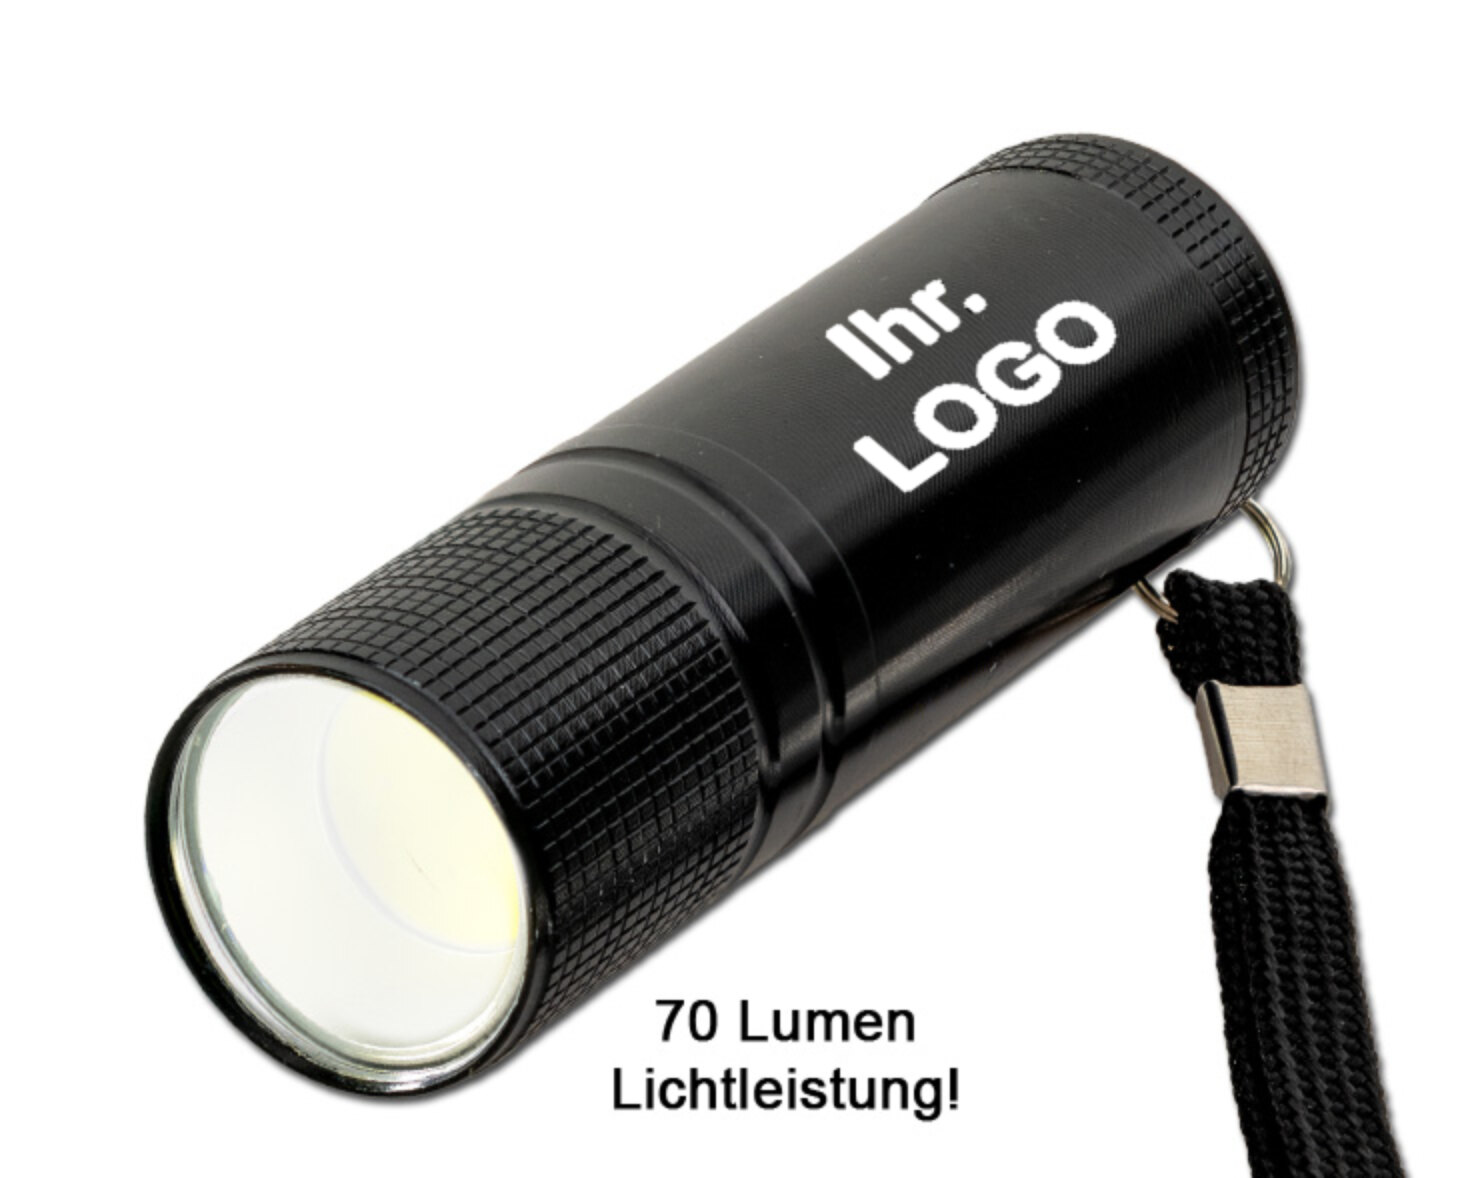 COB-Flashlight Laser als graviertes Werbegeschenk